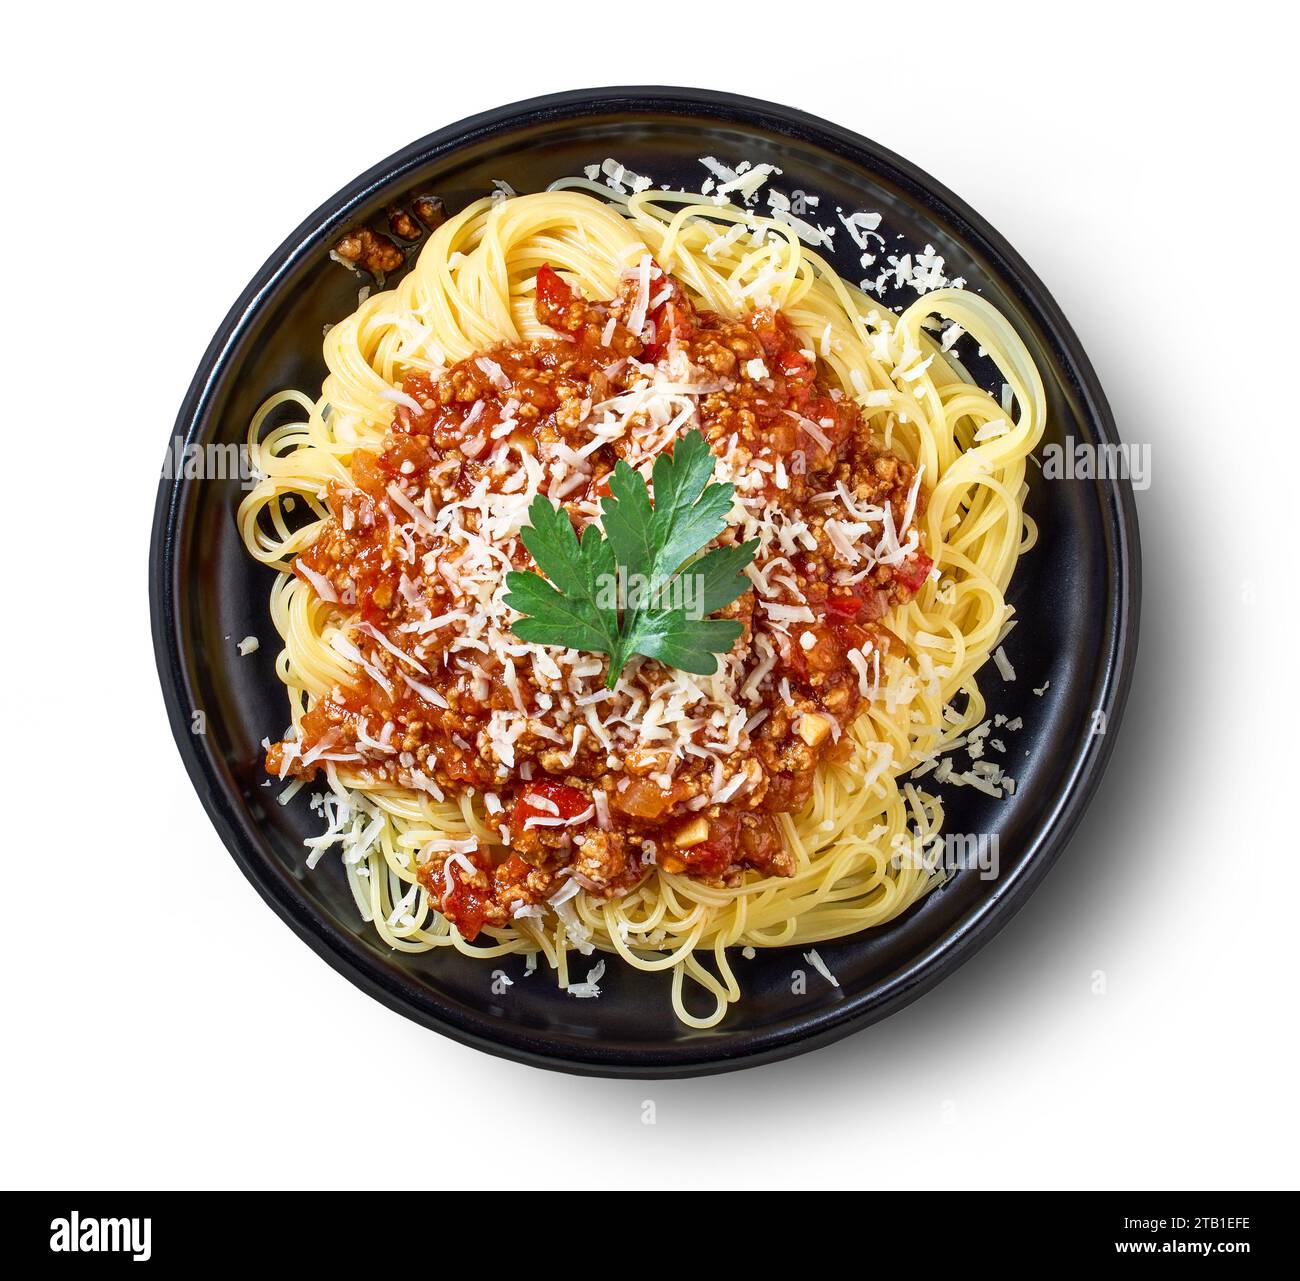 Teller mit Nudelspaghetti mit Sauce Bolognese isoliert auf weißem Hintergrund, Blick von oben Stockfoto